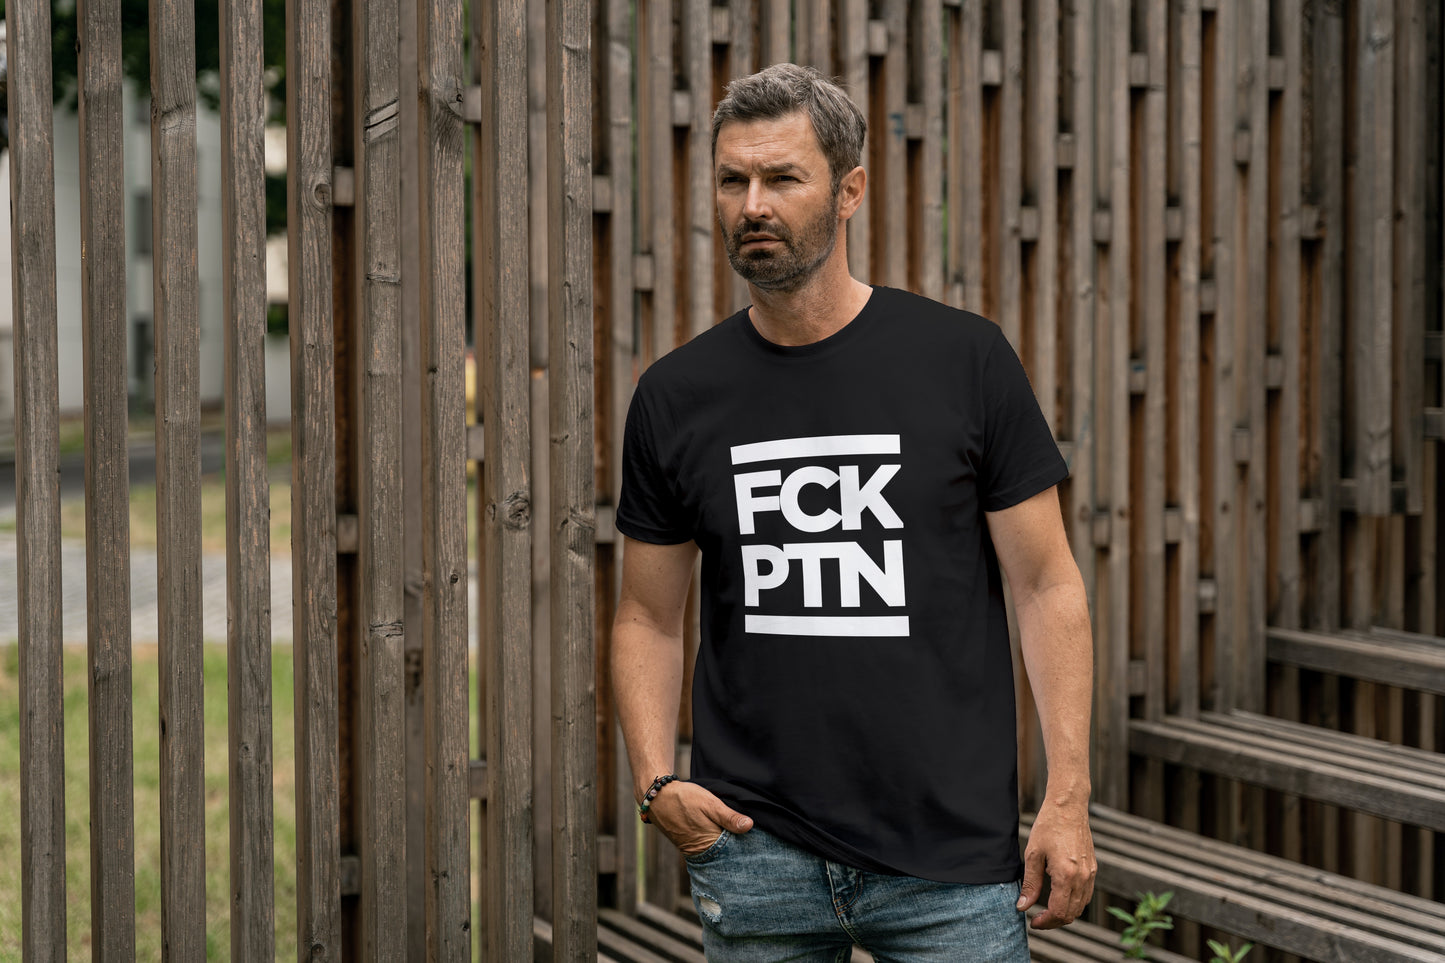 Tričko s krátkým rukávem FCK PTN